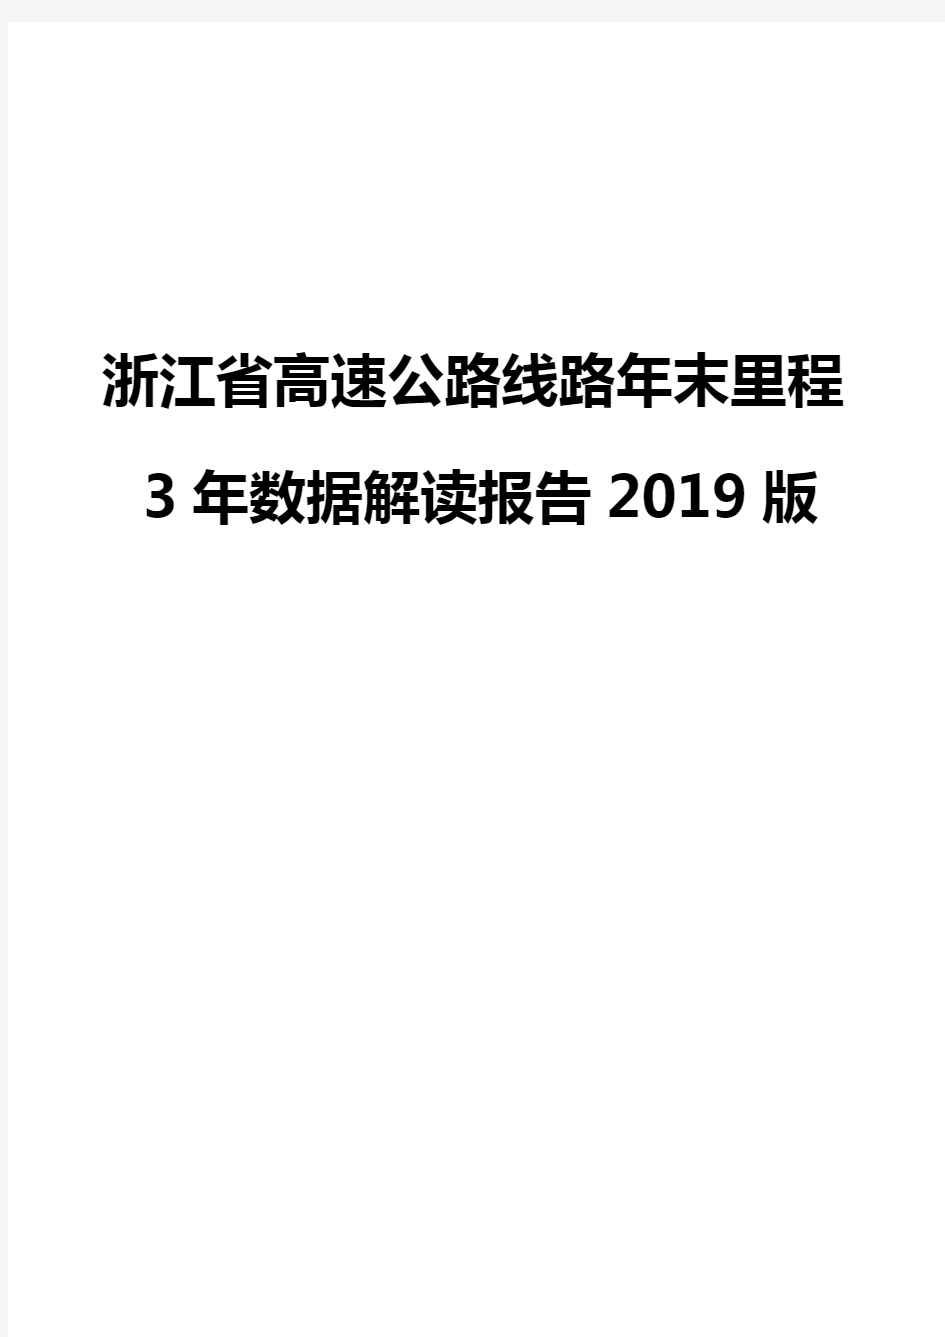 浙江省高速公路线路年末里程3年数据解读报告2019版